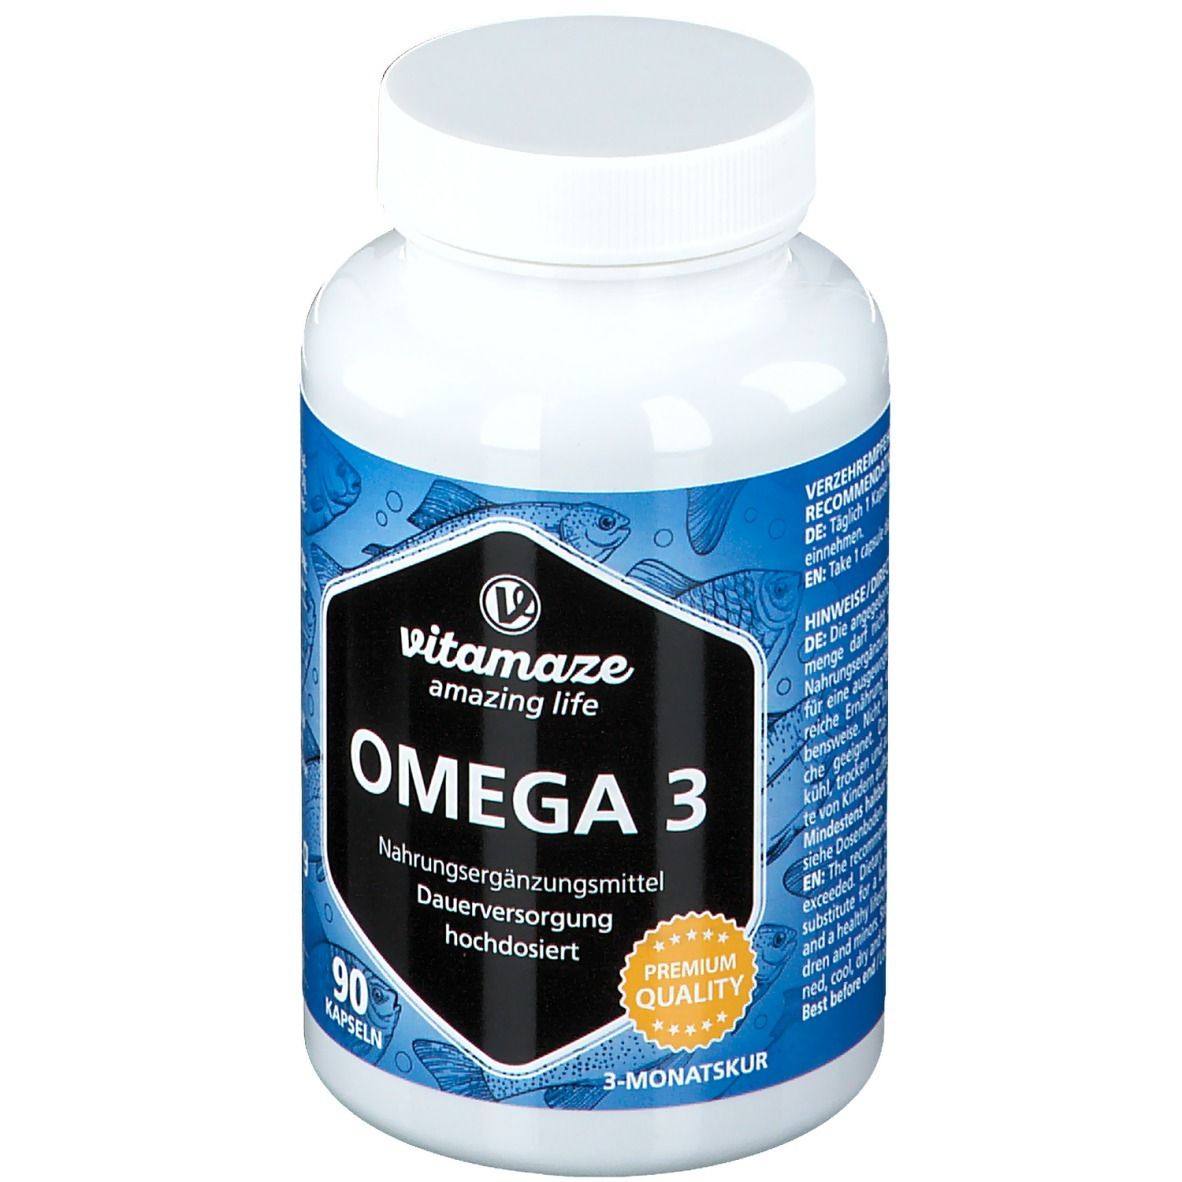 Vitamaze Omega 3 hochdosiert